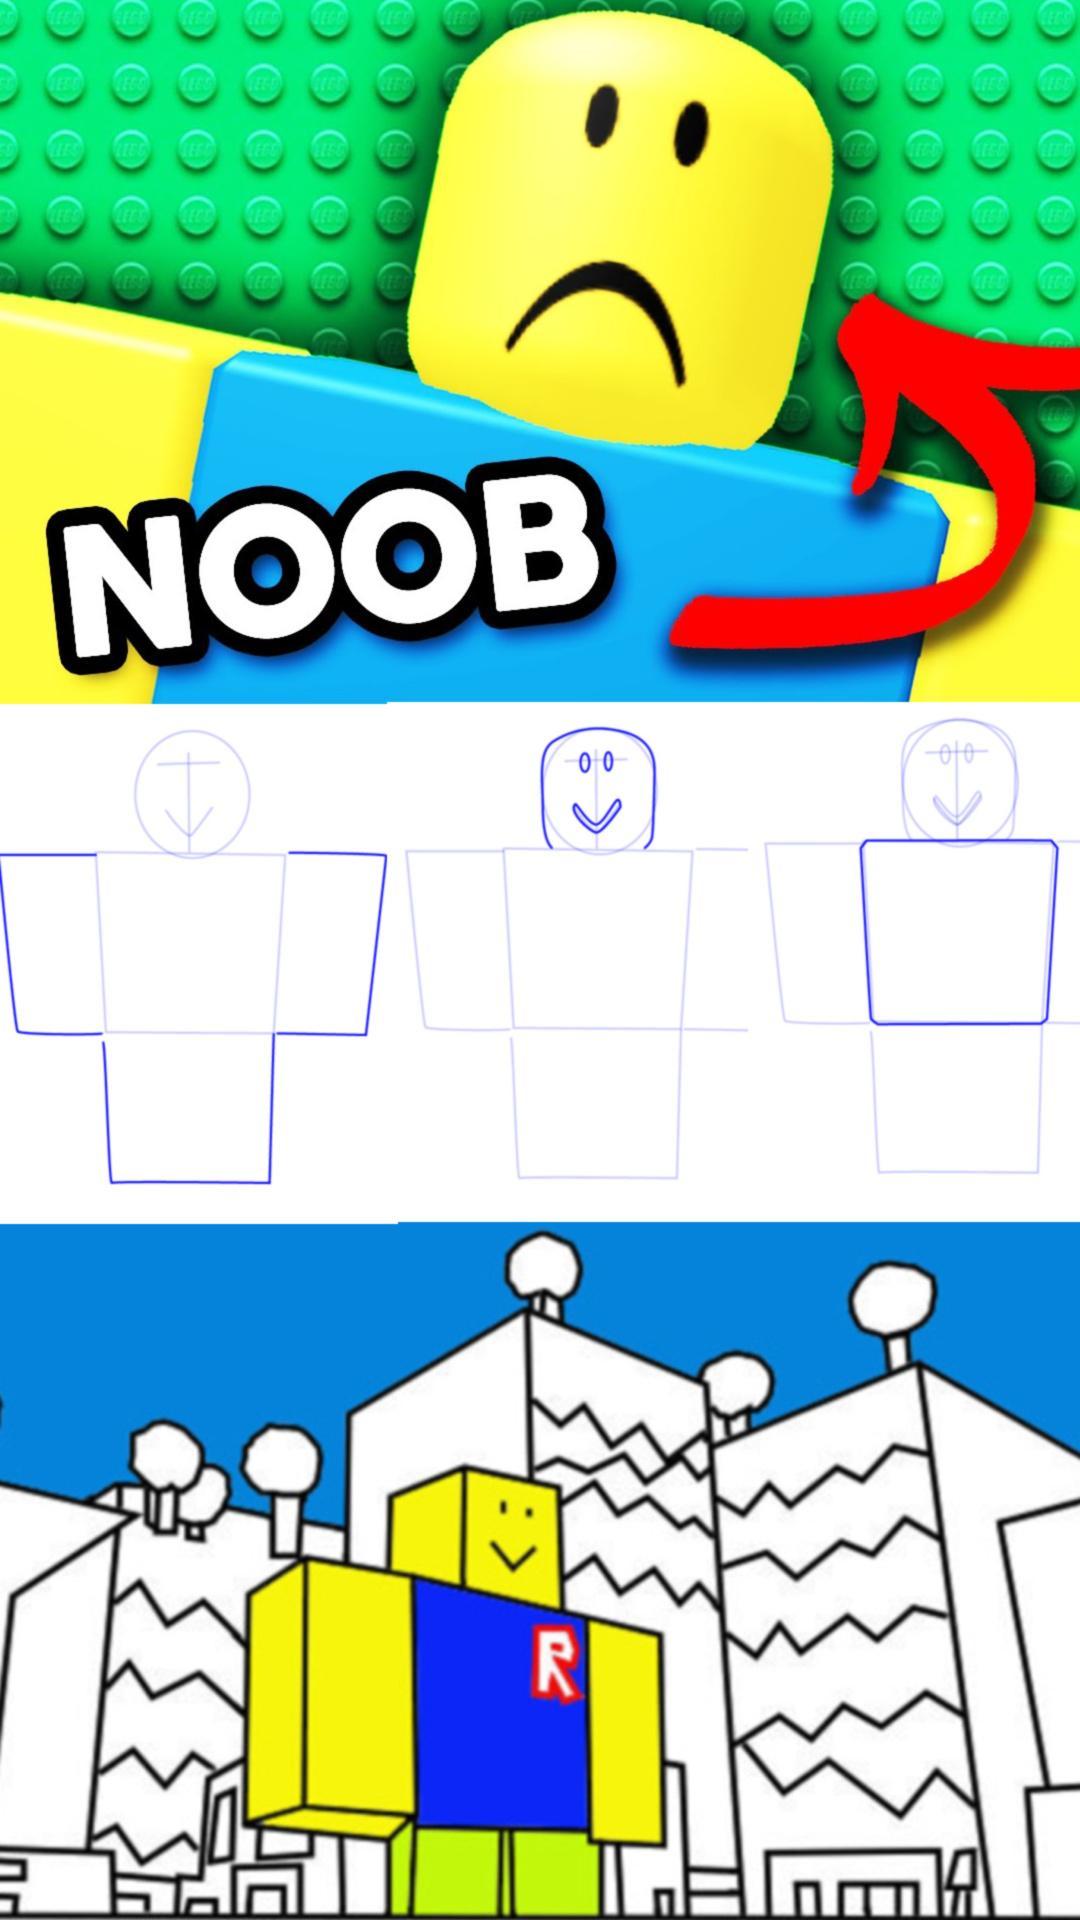 Cómo Dibujar Roblox For Android Apk Download - roblox como dibujar